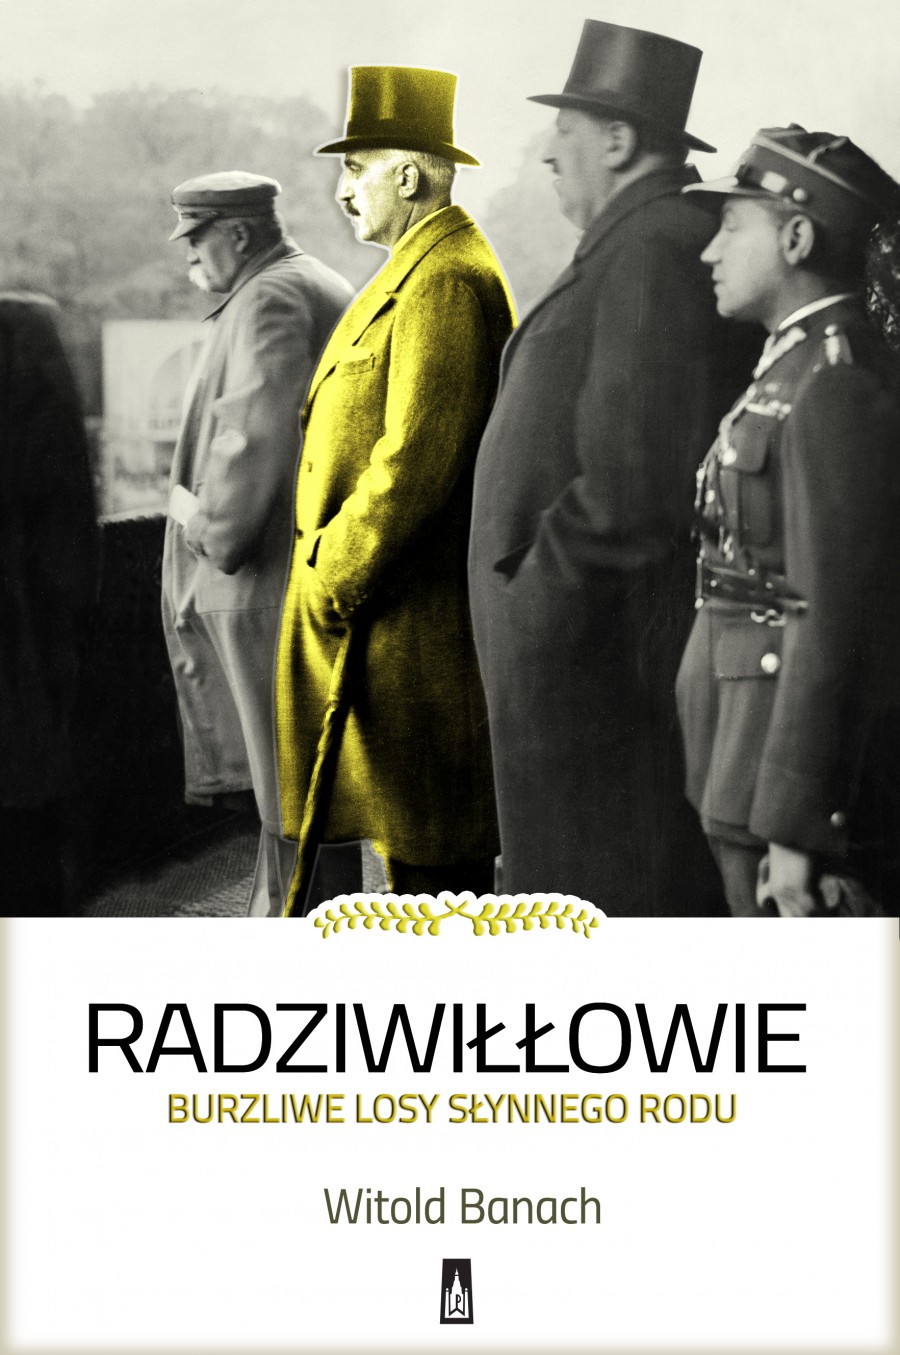 radziwillowie - www.wydawnictwopoznanskie.com